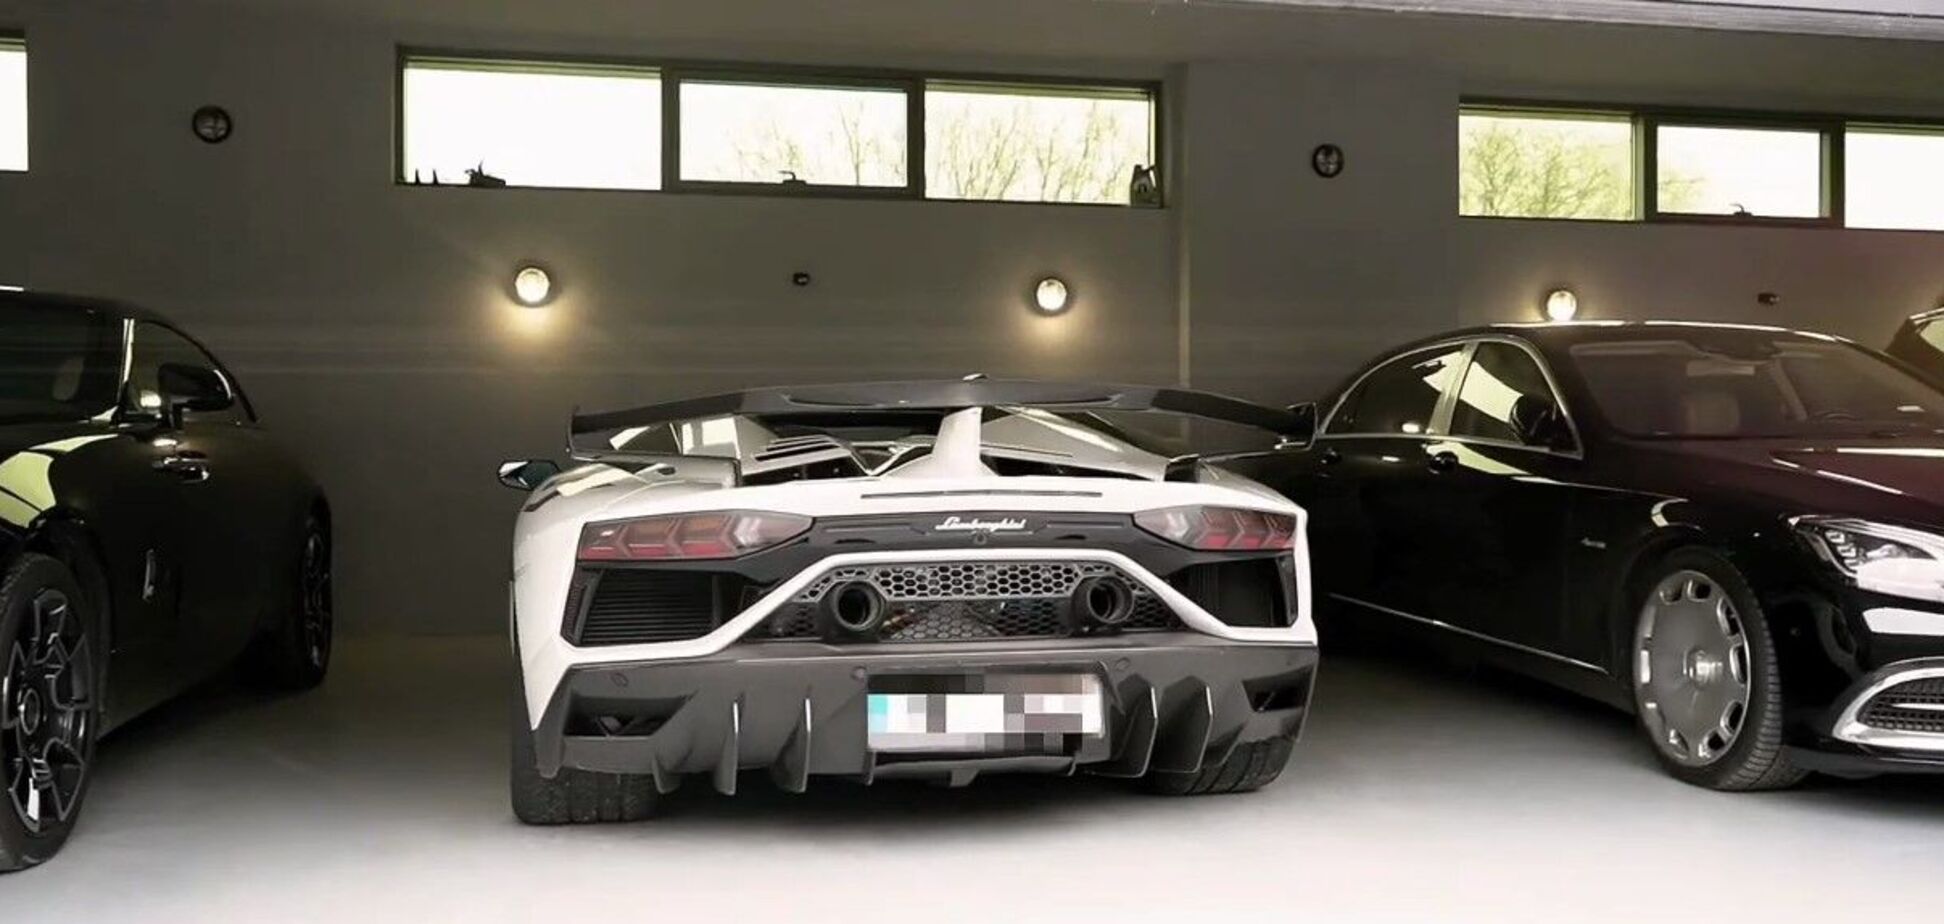 В Украине наложили арест на Lamborghini за 650 000 евро и еще несколько дорогих авто